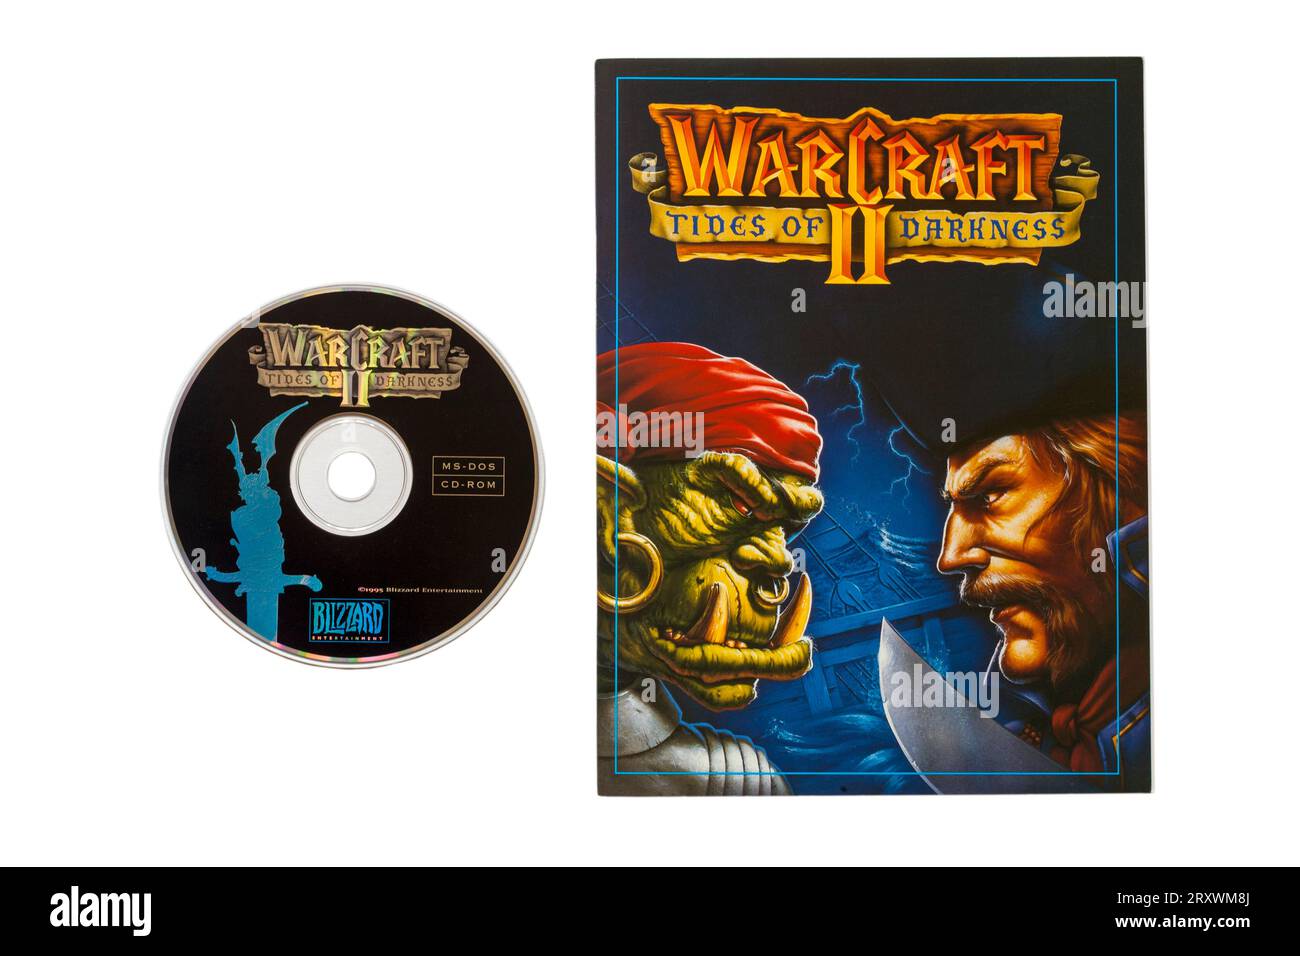 Warcraft II Tides of Darkness, gioco per computer in edizione deluxe, libro e disco isolati su sfondo bianco Foto Stock